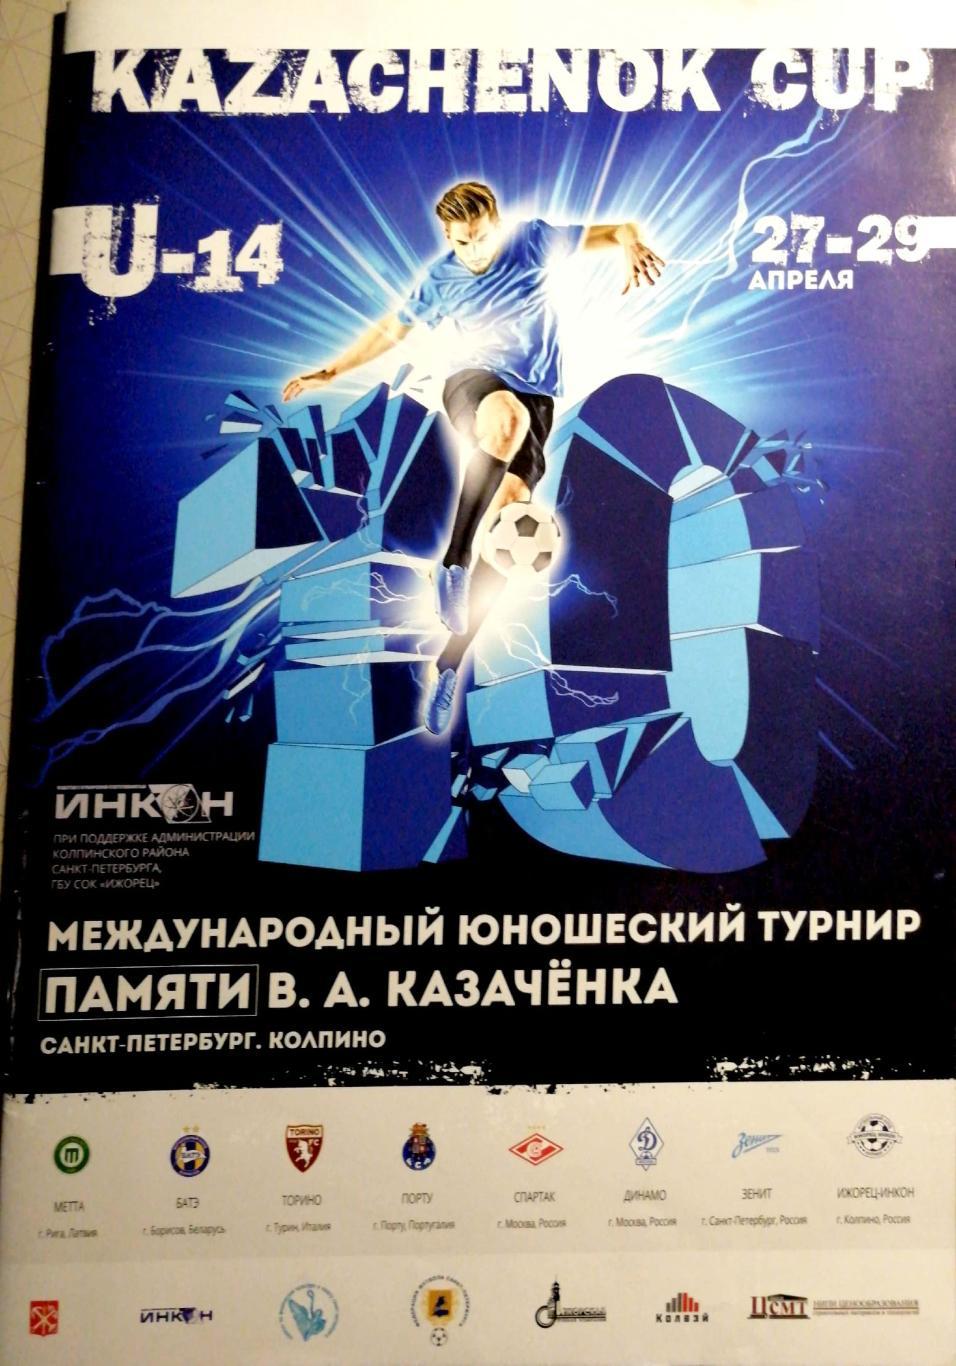 Международный юношеский турнир памяти Казаченка СПб, Колпино 27-29.04.2018